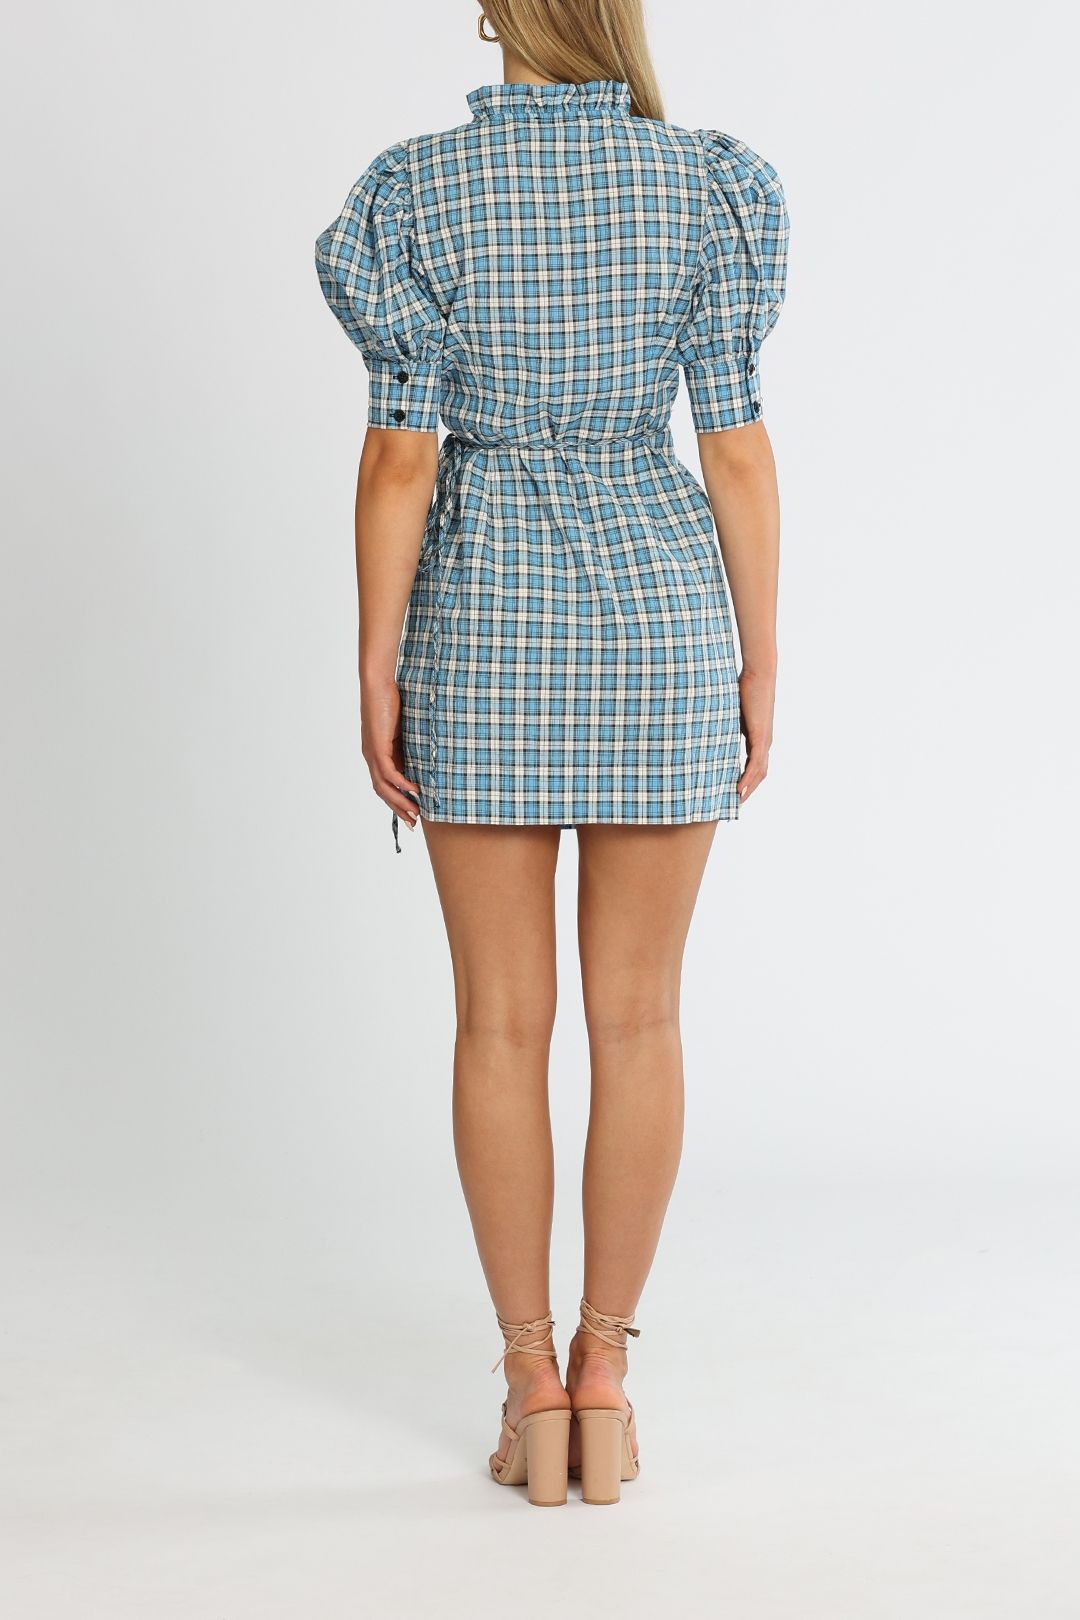 Ganni Seersucker Check Azure Blue Short Sleeve Mini Dress Ruffles